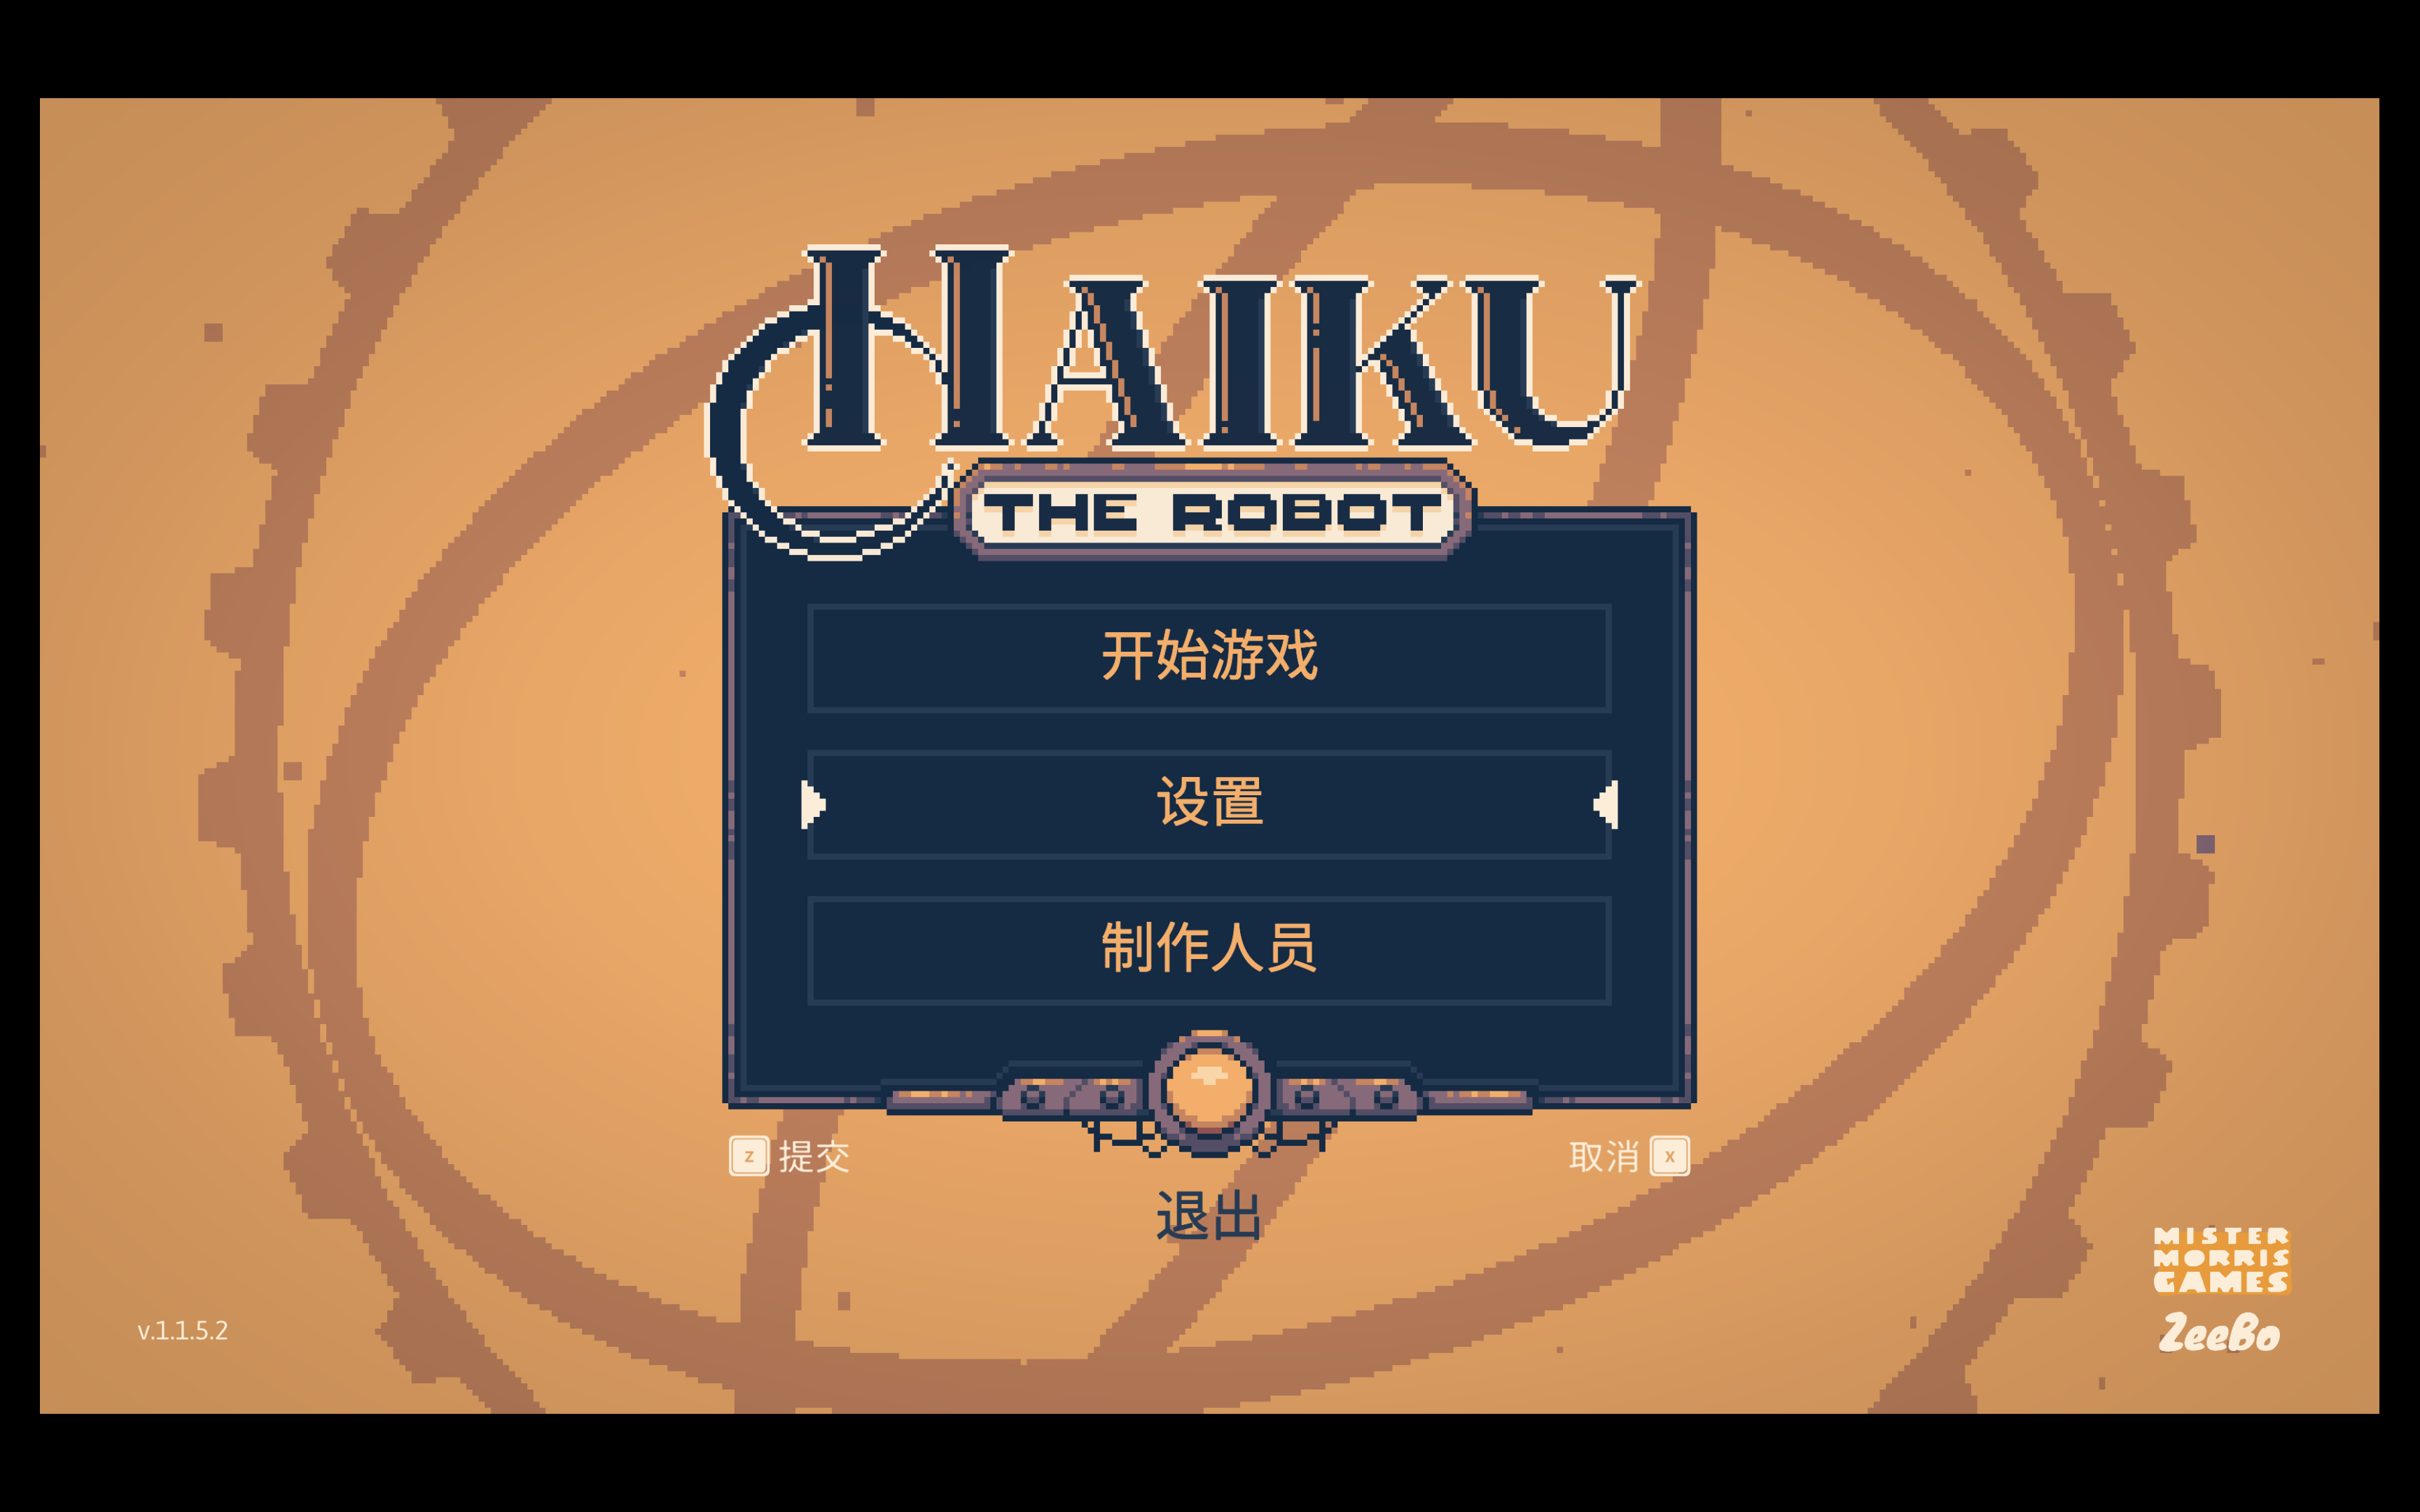 机器人海库 for Mac v1.1.5.2 Haiku, the Robot 中文原生版 苹果电脑